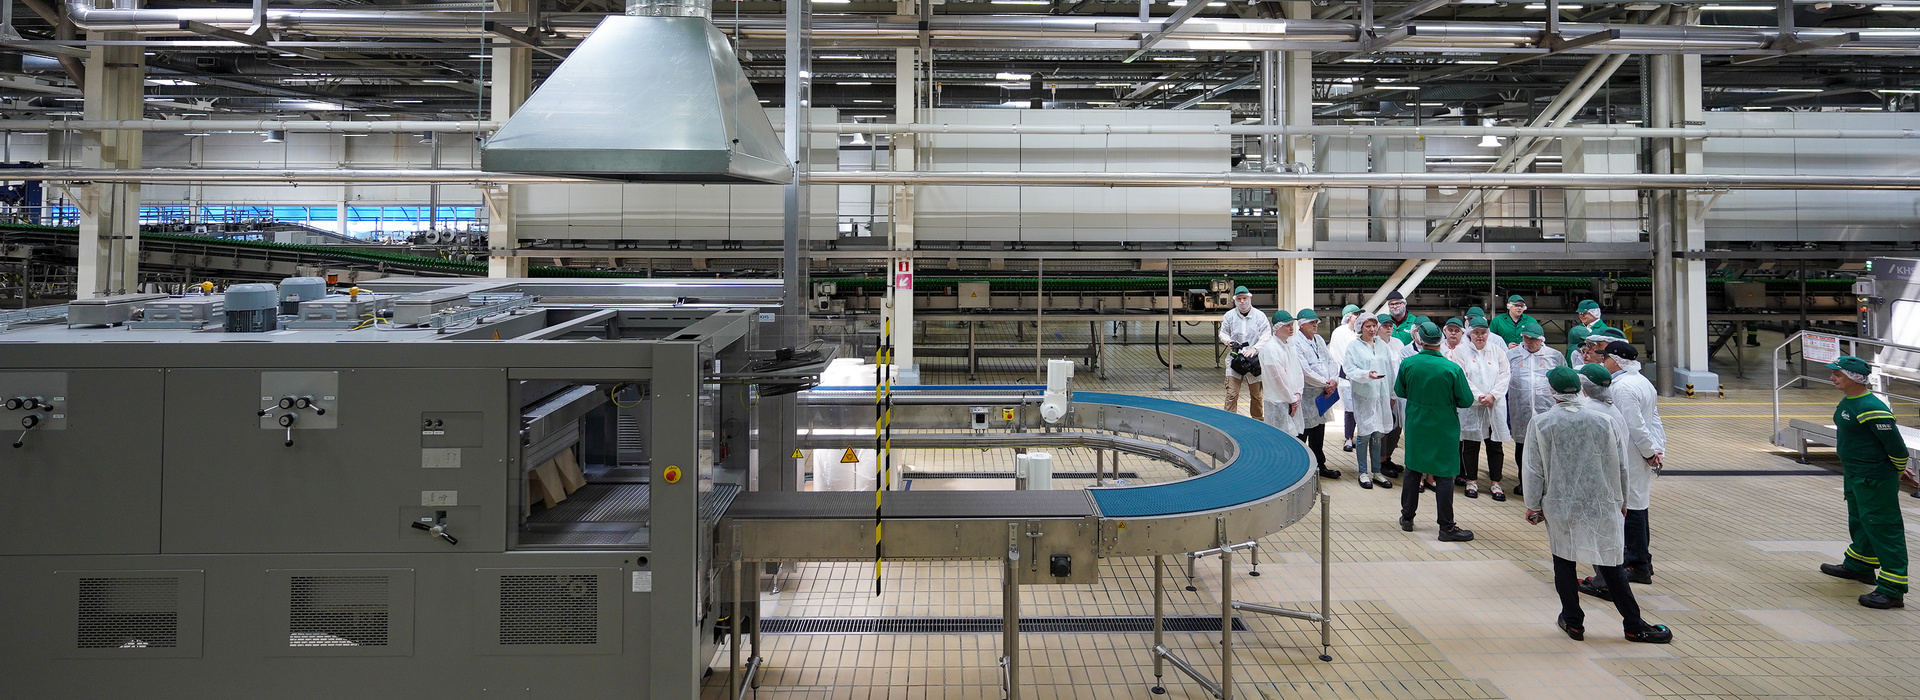 Інвестиції дії. Carlsberg Ukraine представила нову виробничу лінію, що збільшує потужність виробництва продукції у банці на 80%